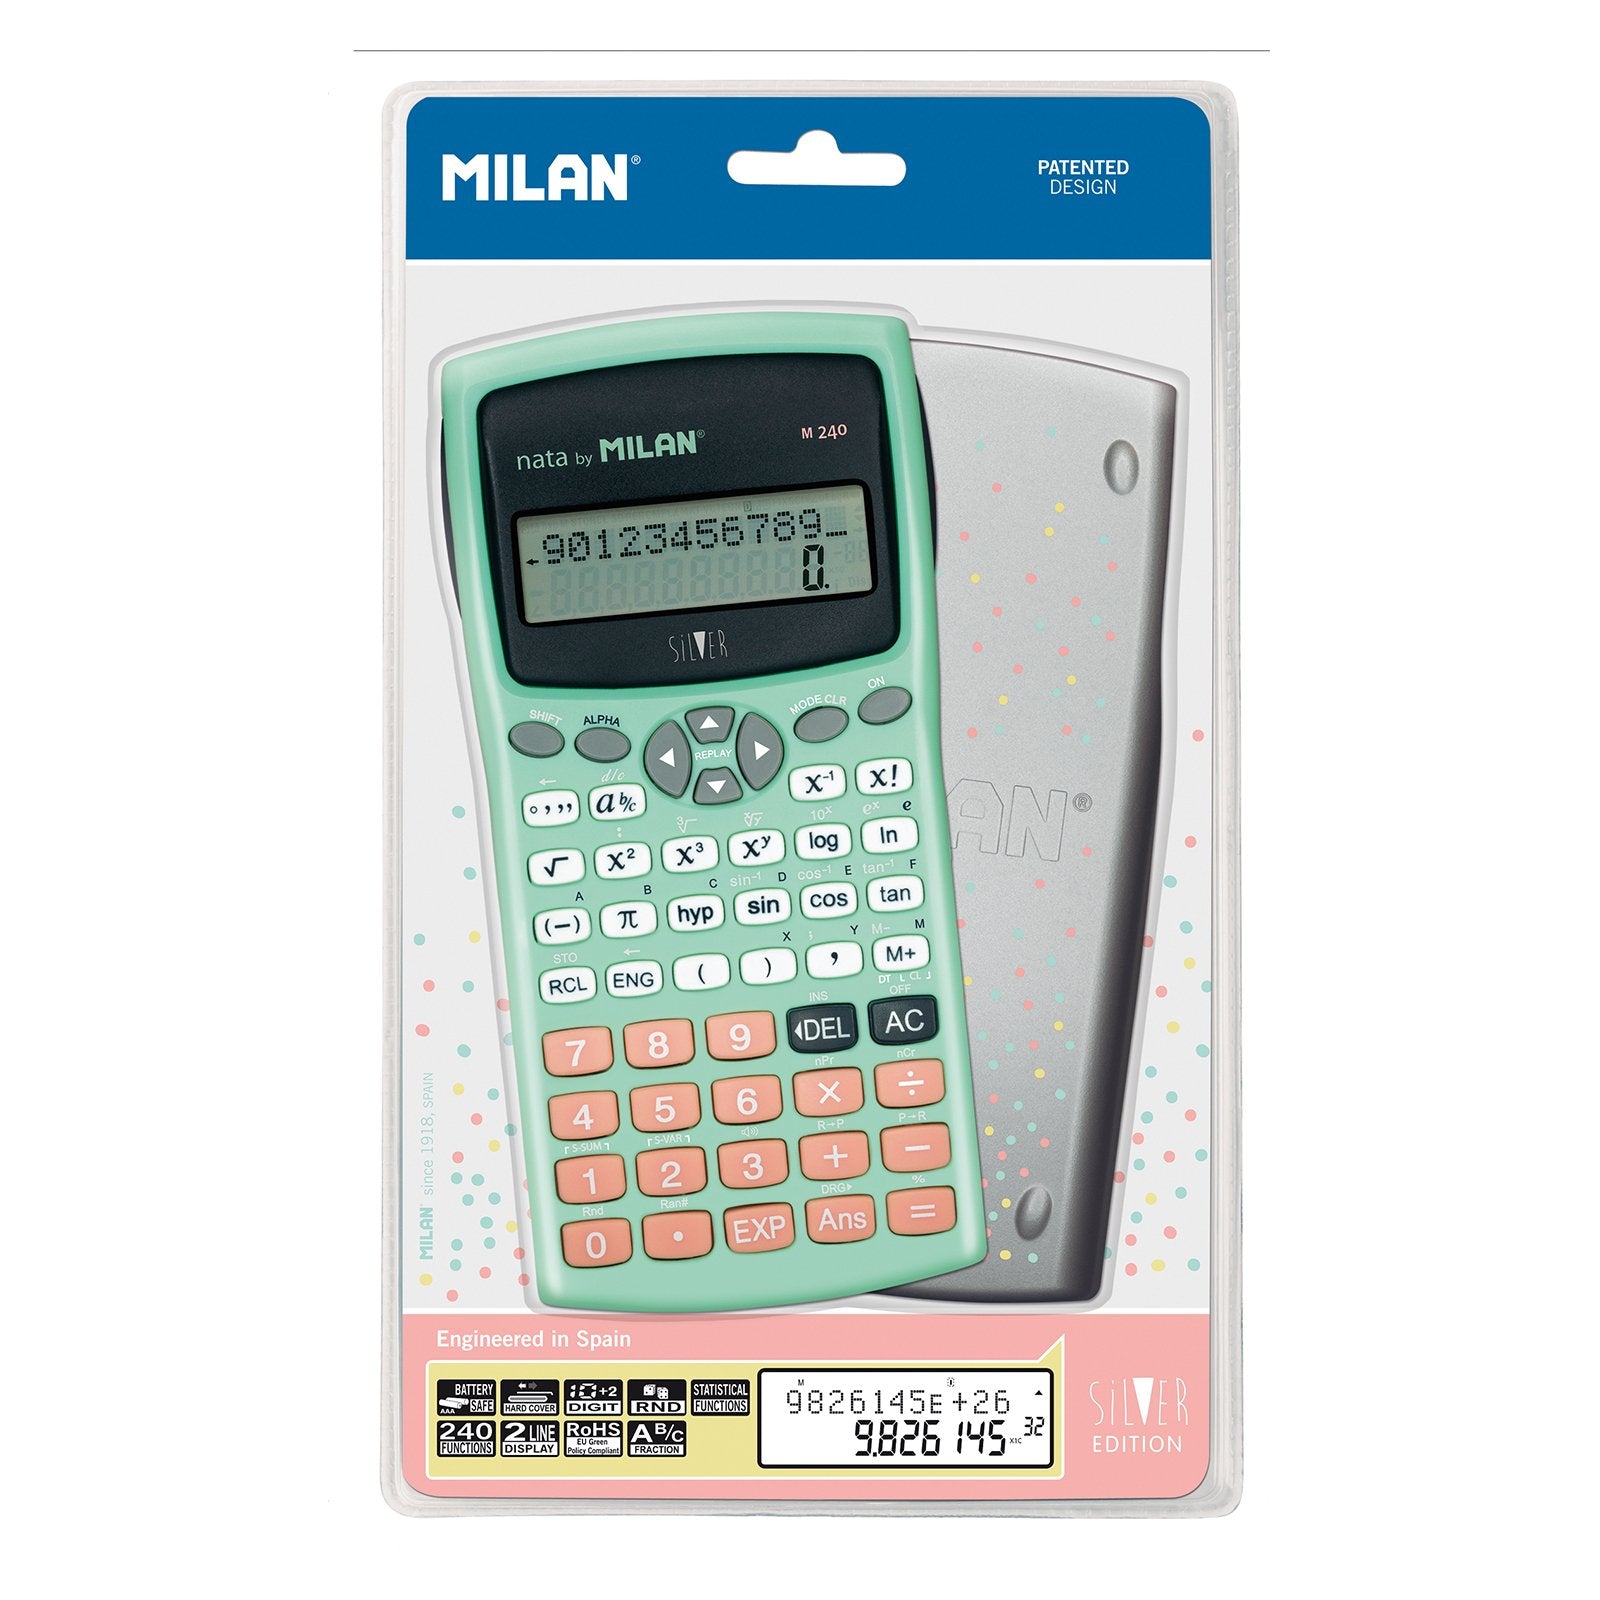 MILAN SILVER - Calculadora Científica Escolar 240 Funciones, LCD 2 Líneas. Turquesa